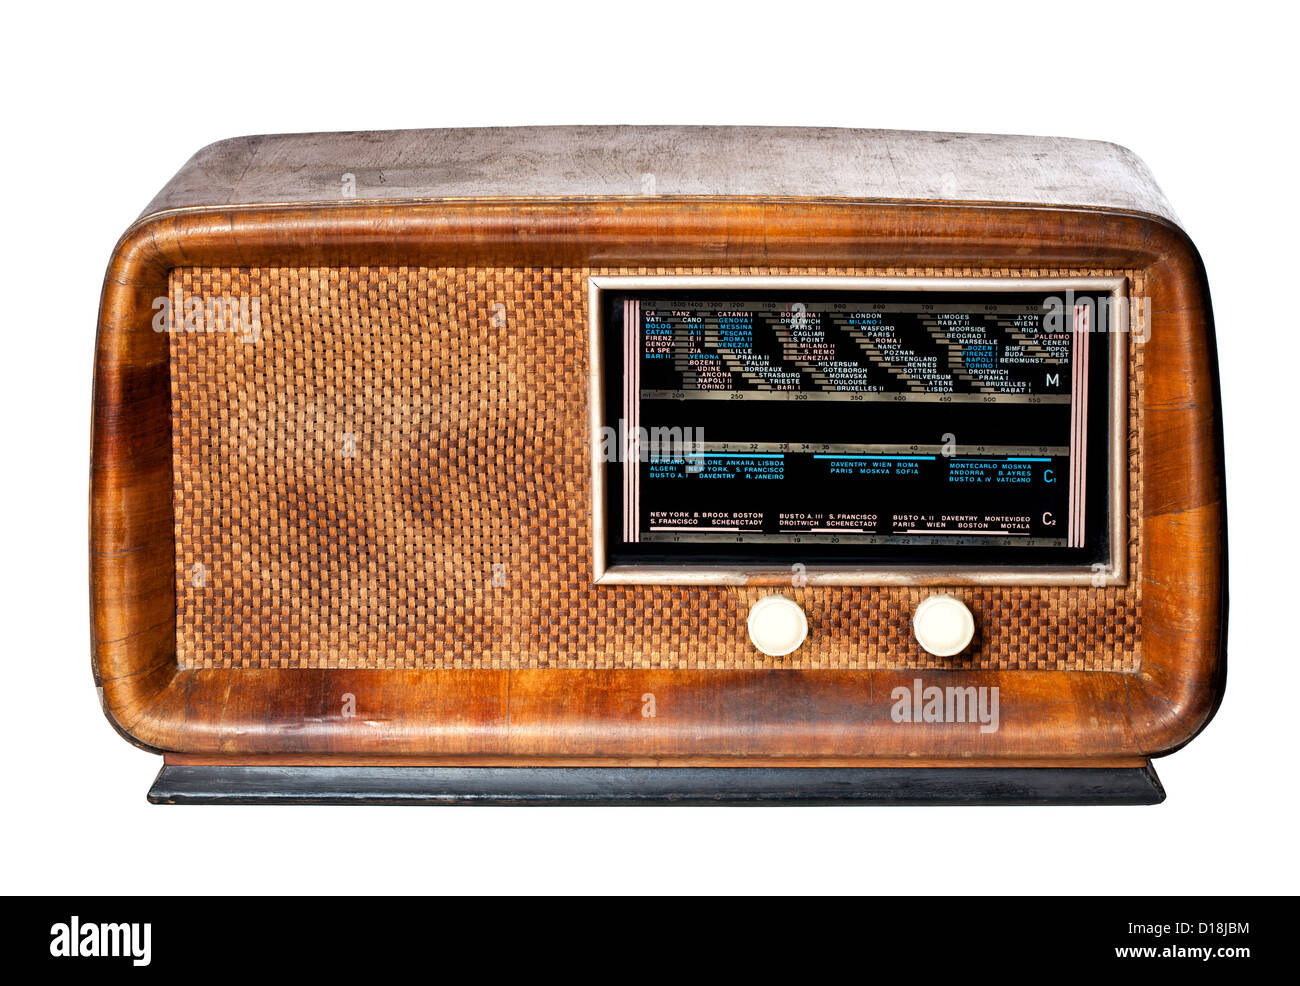 Radio vintage isolé sur fond blanc Banque D'Images